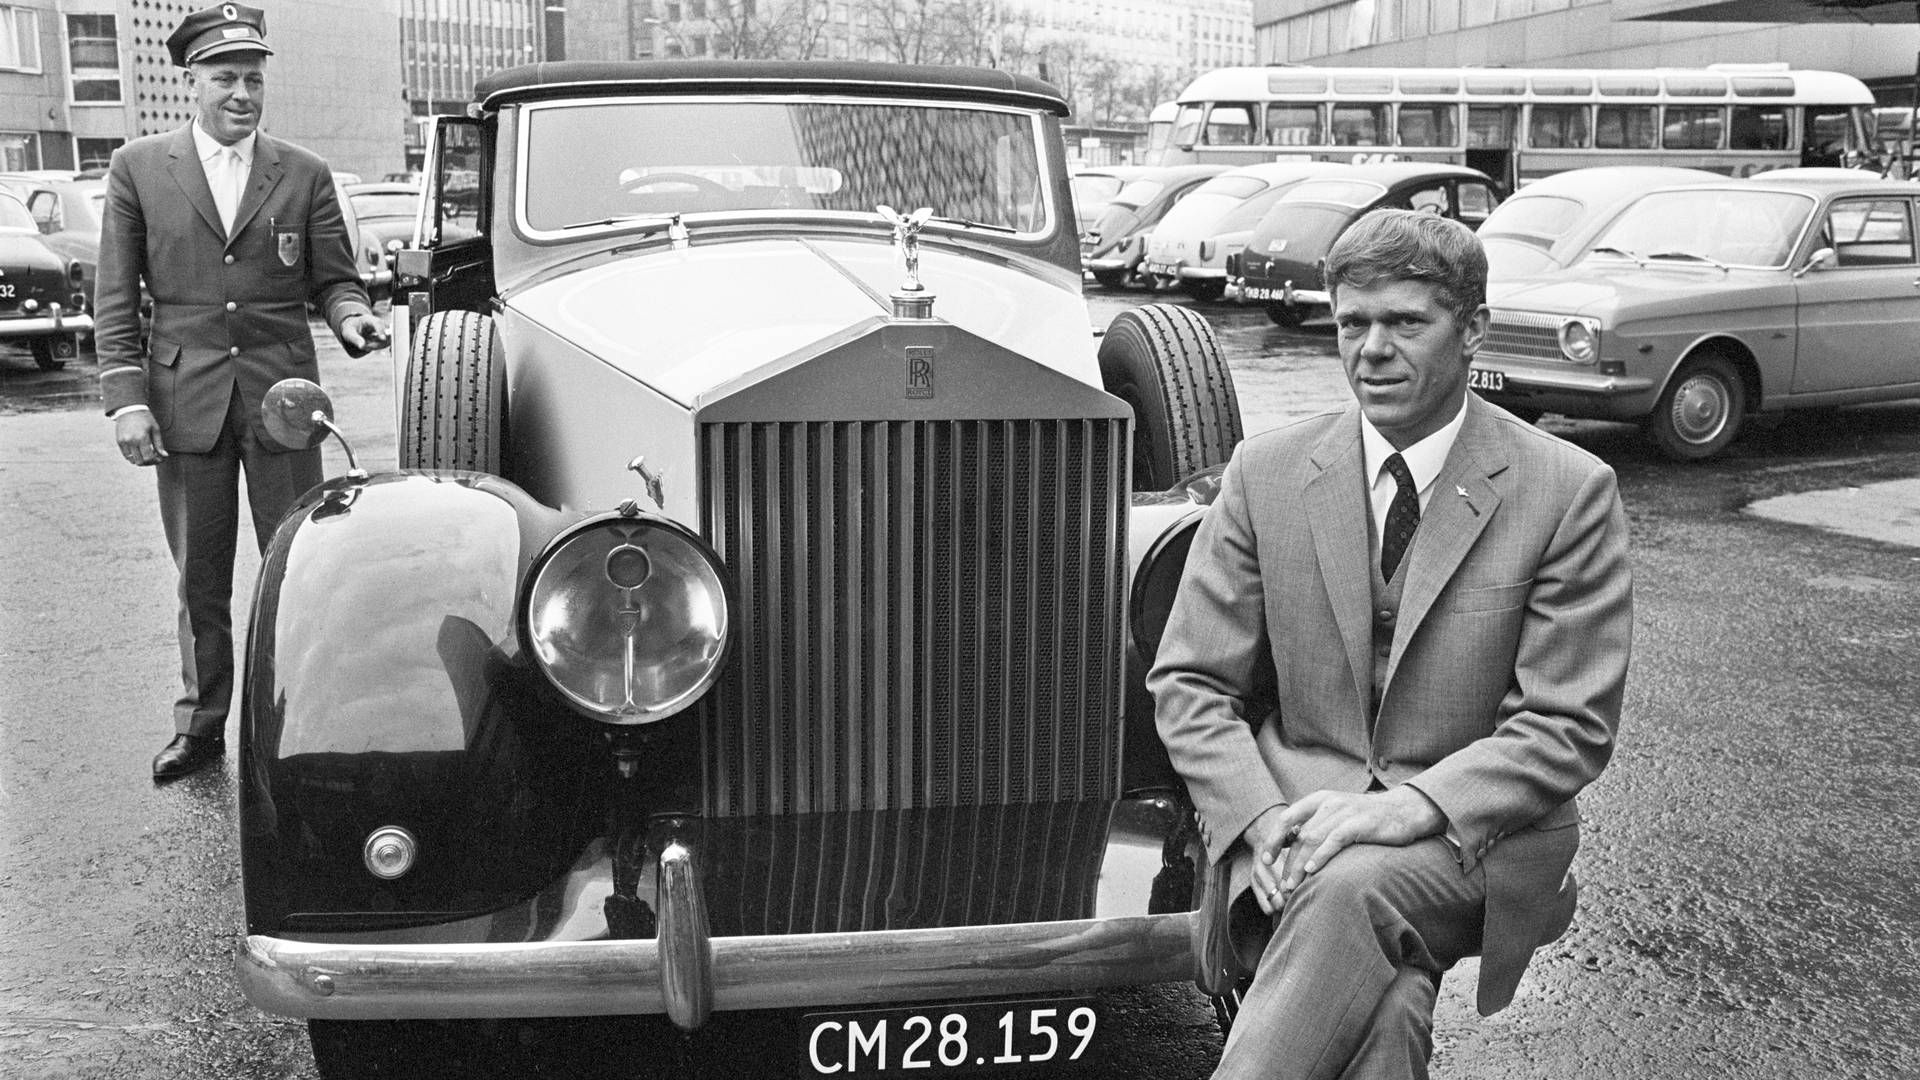 Arne Bybjerg skabte en formue på opbygningen af Carmen Curlers. Her ses han i Kalundborg med sin Rolls Royce og sin privatchauffør i 1967.